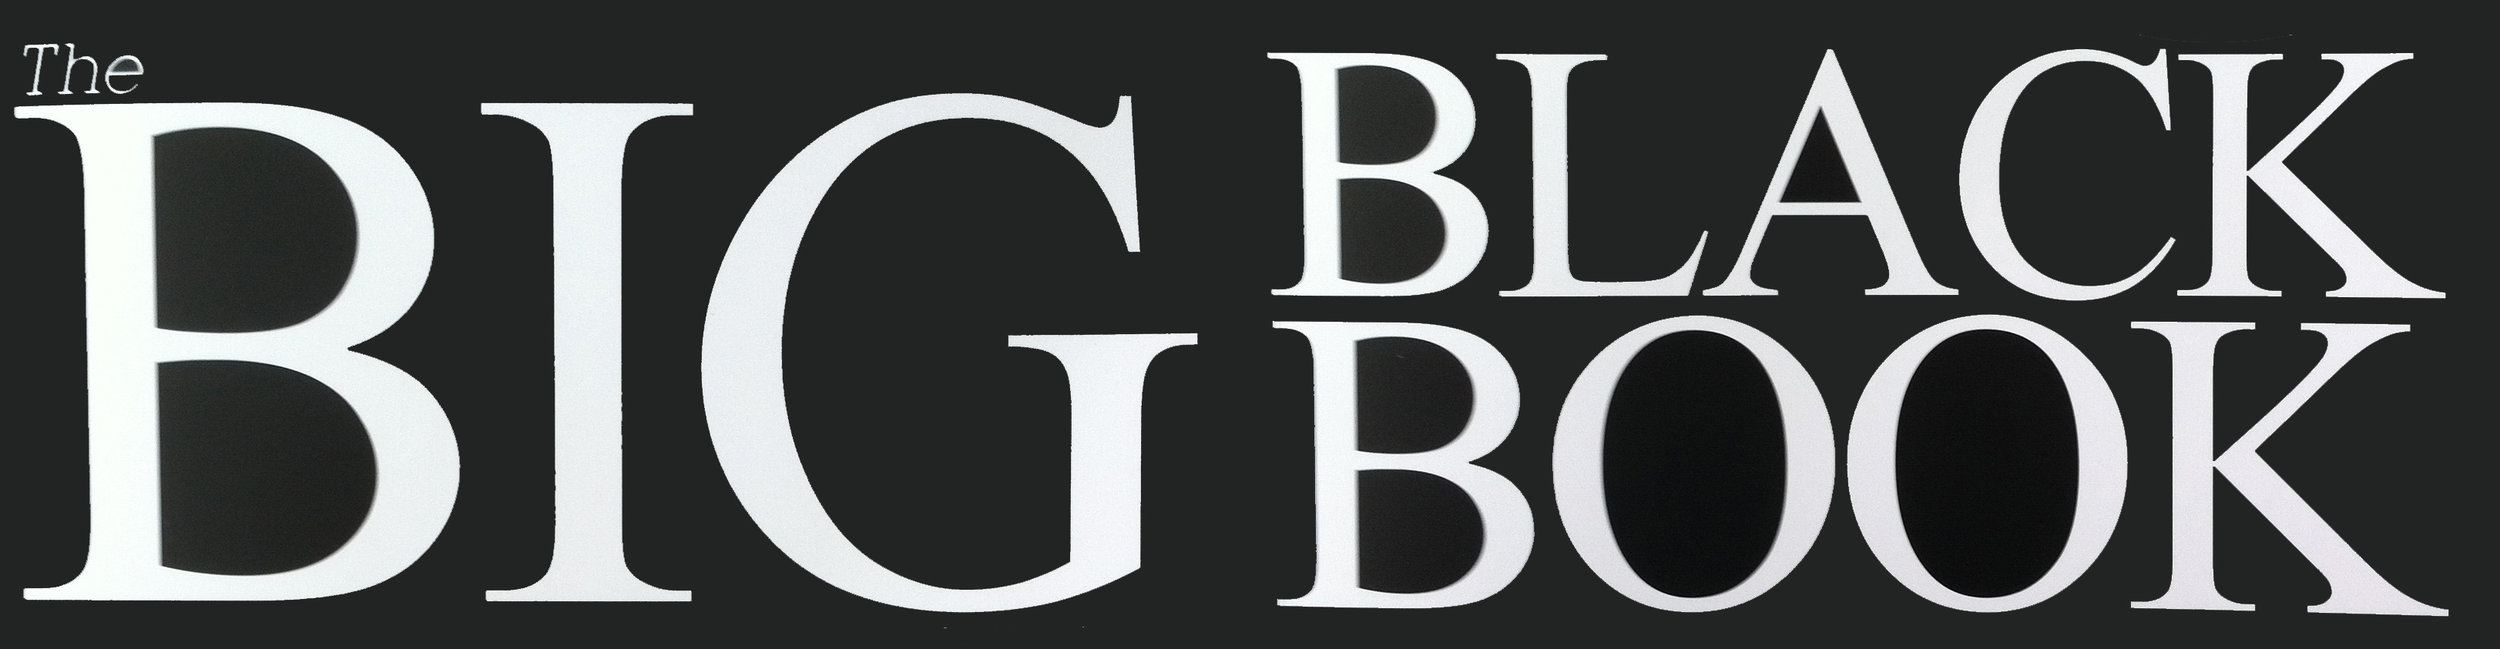 Big Black Book logo.jpg